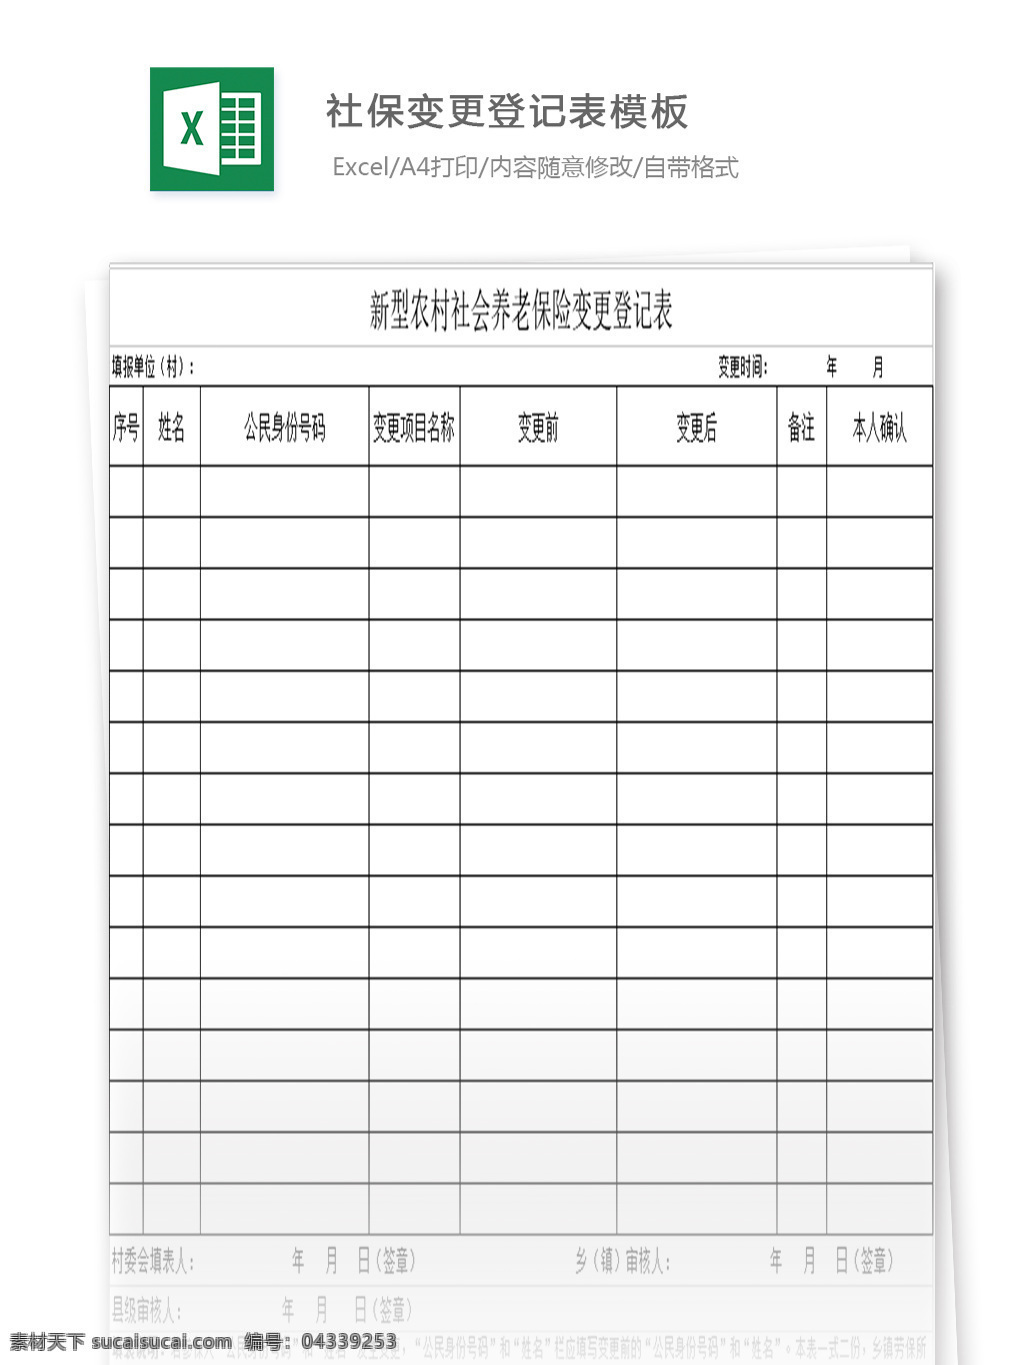 变更 登记表 模板 表格 表格模板 表格设计 图表 社保清单 变更登记表